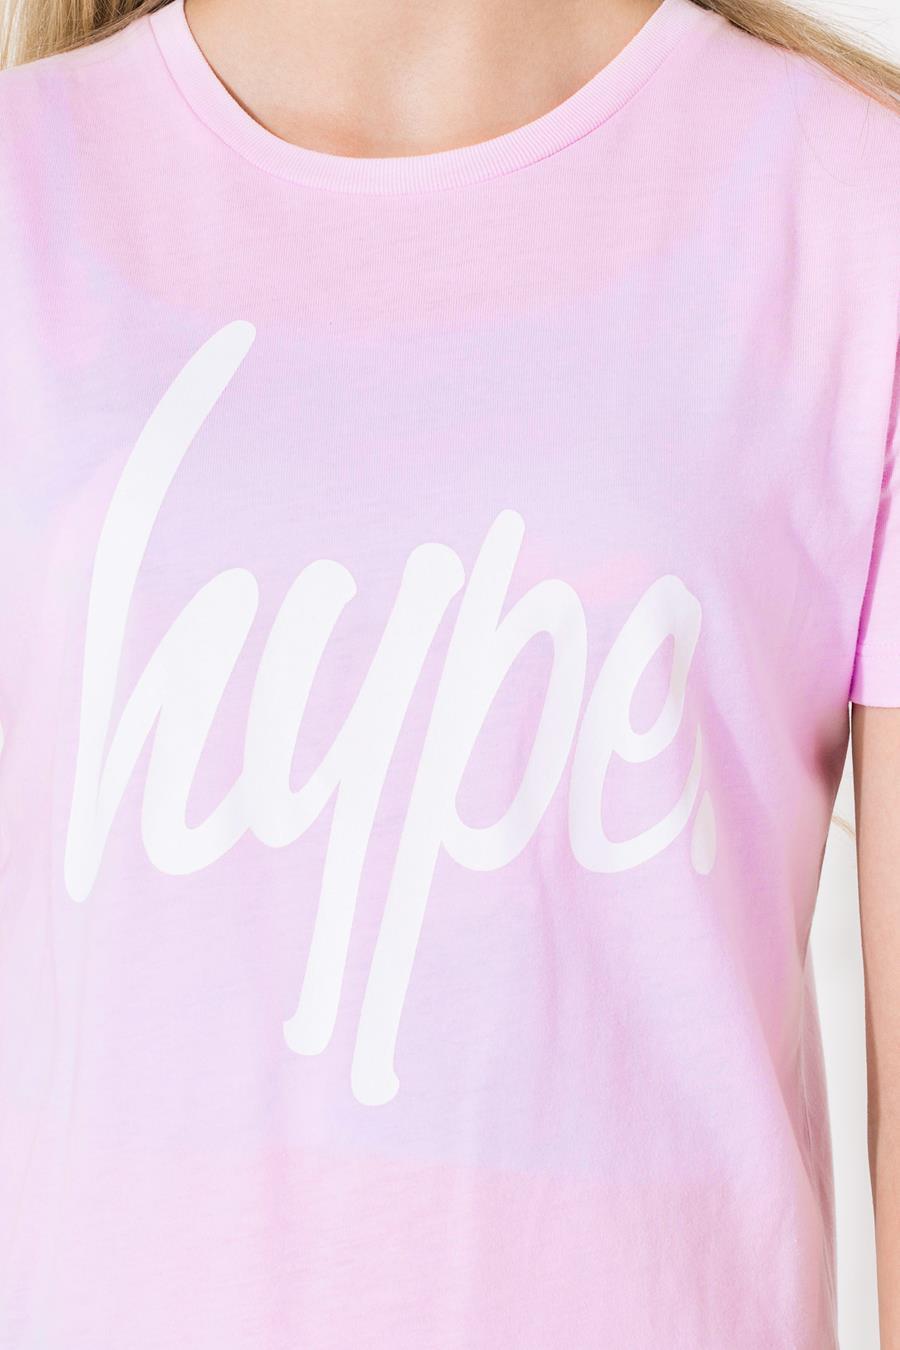 Hype Pink Script Kids T-Shirt